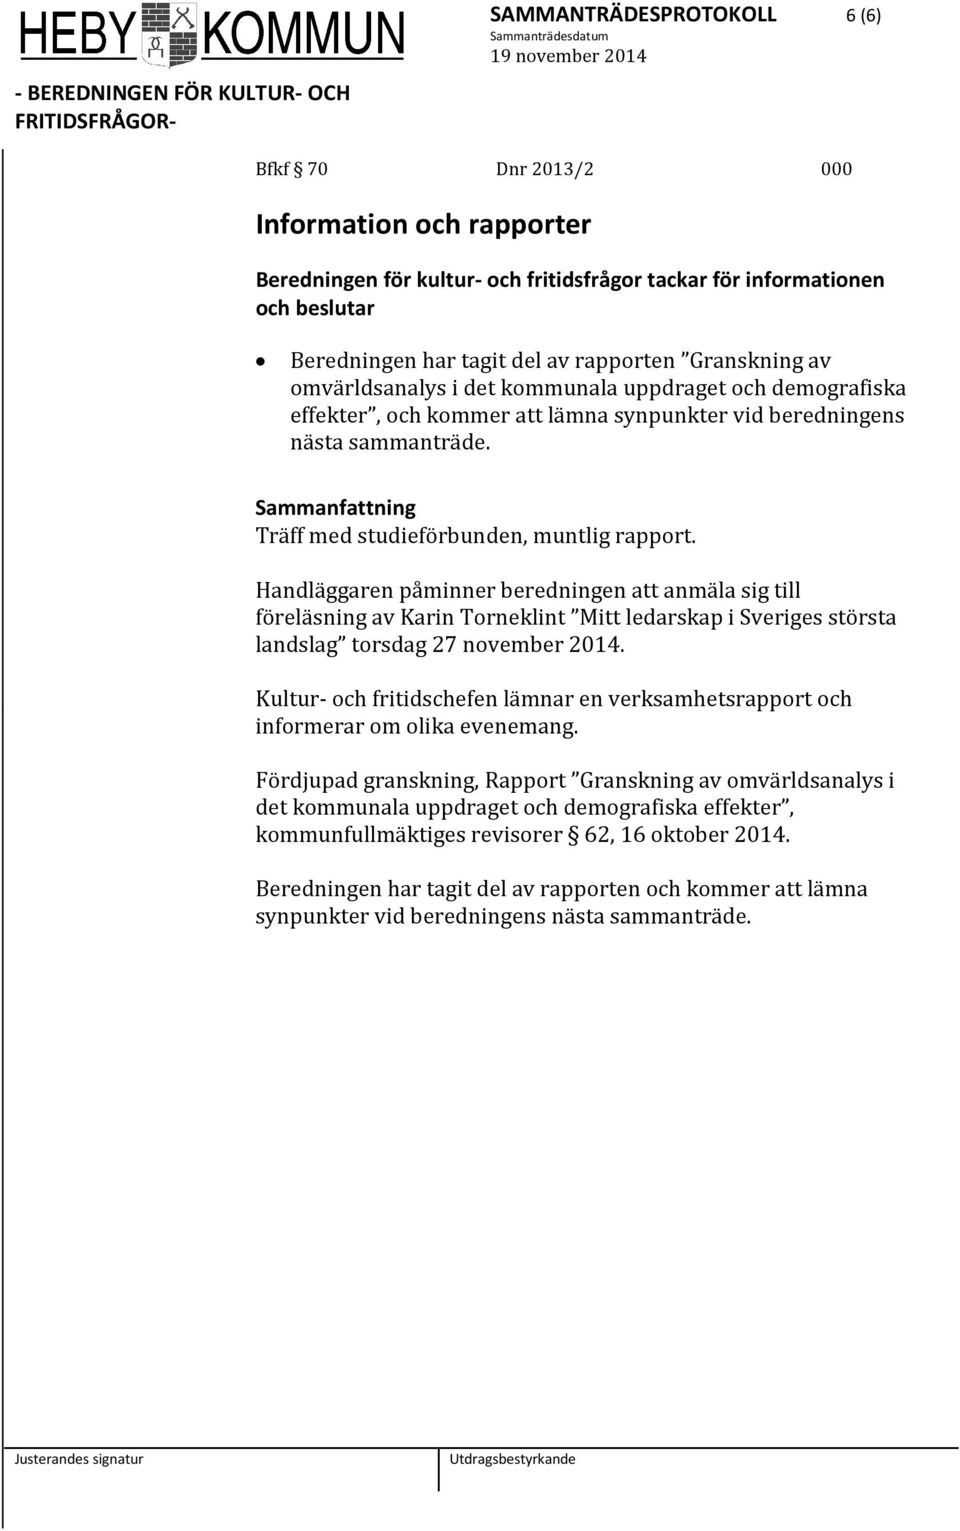 Handläggaren påminner beredningen att anmäla sig till föreläsning av Karin Torneklint Mitt ledarskap i Sveriges största landslag torsdag 27 november 2014.